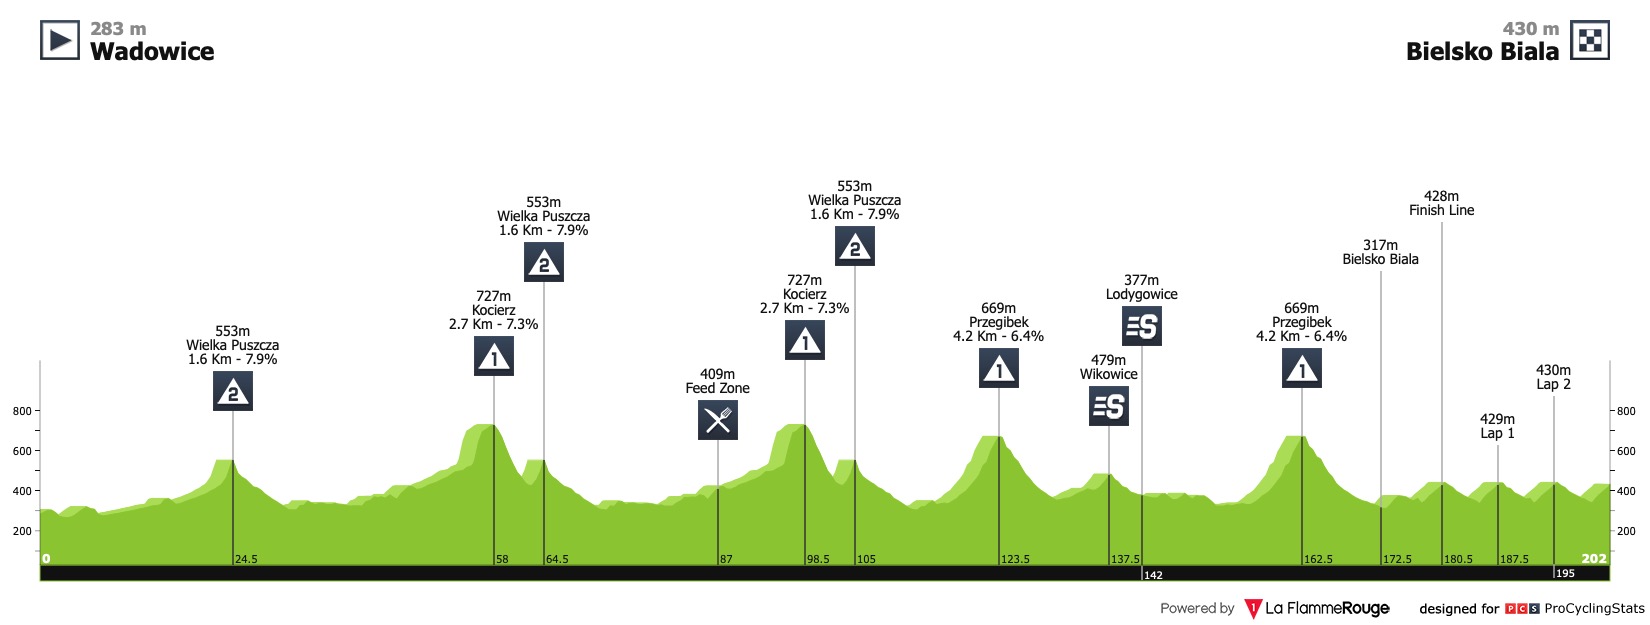 tour-de-pologne-2020-stage-3-profile-29ad304292.jpg